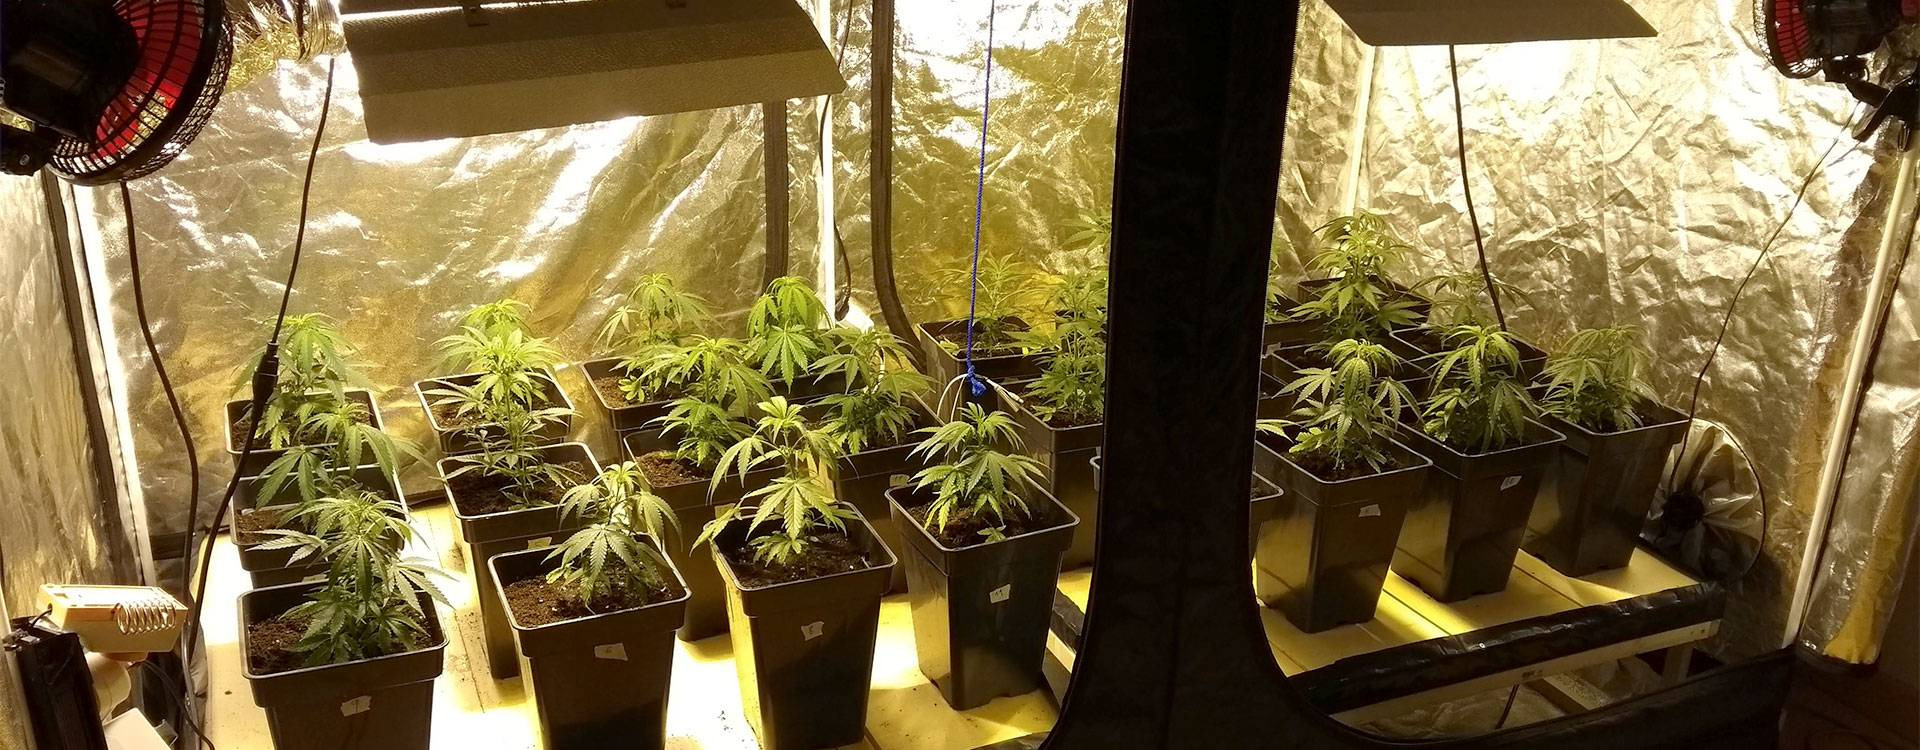 Como germinar semillas de marihuana en interior